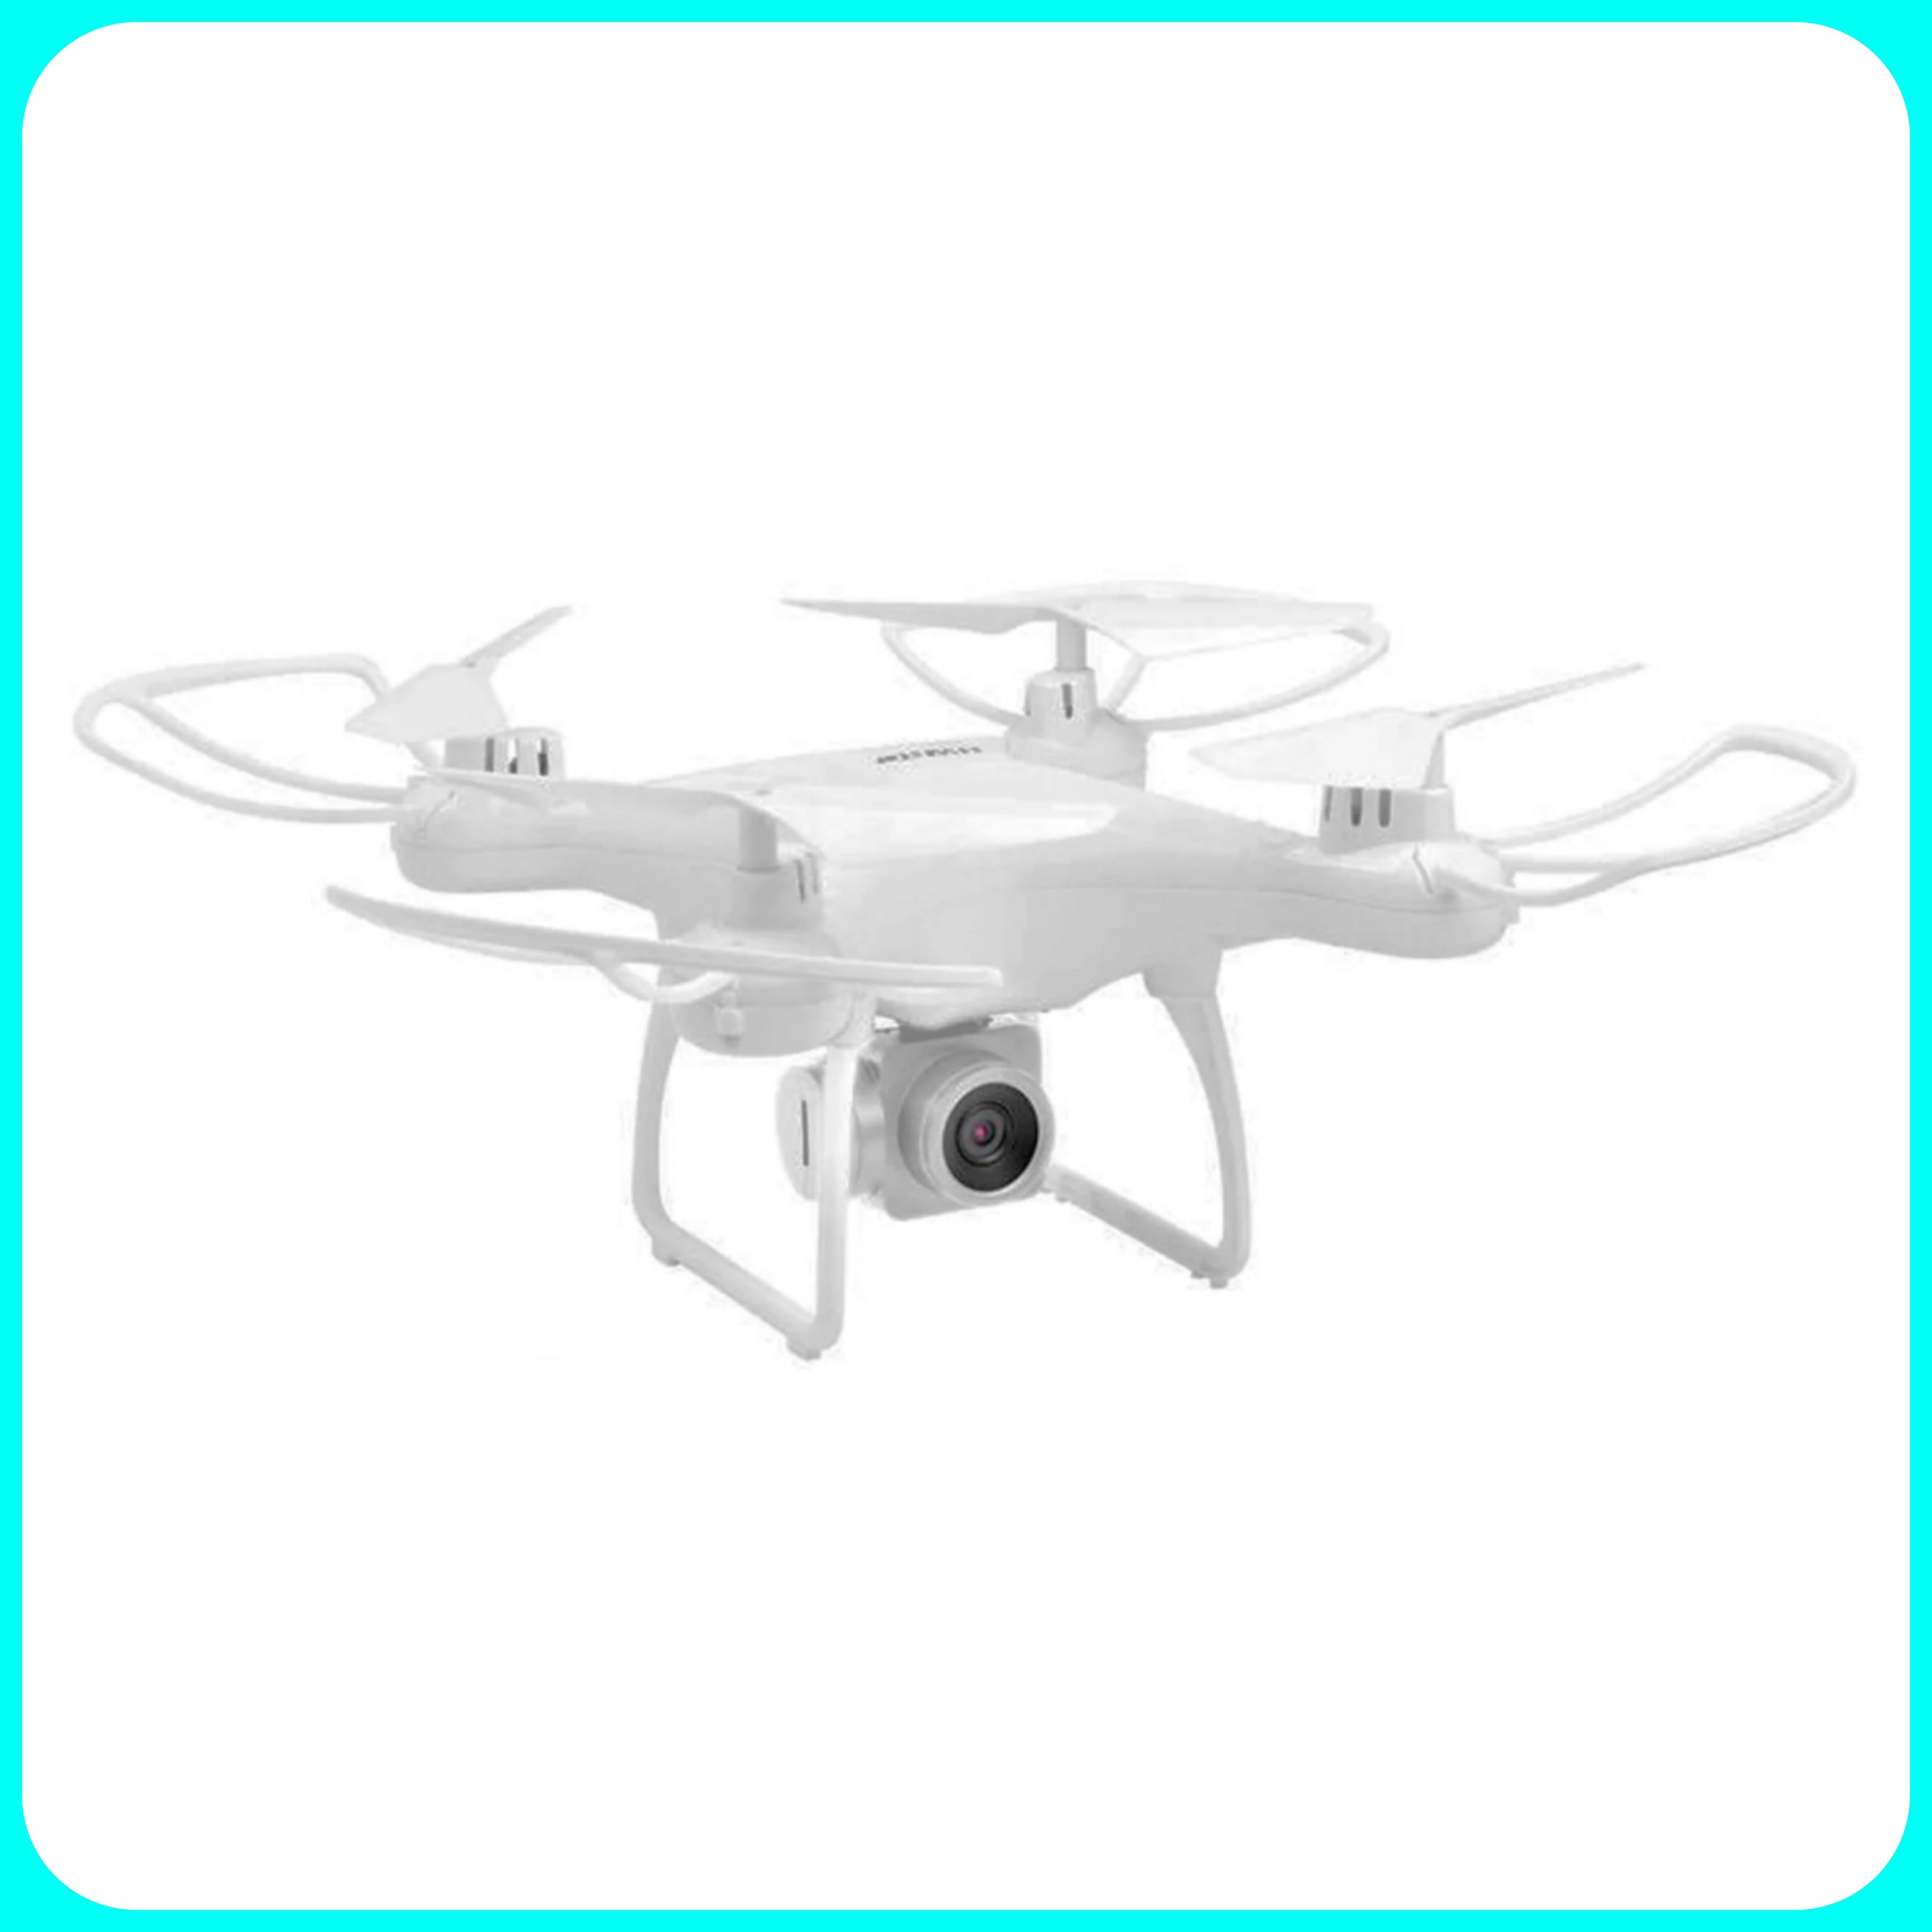 Drone SKY Speed [EDIZIONE LIMITATA] - Drone Quadricottero, Telecomando, Wifi, 2.4GHz, Camera, Full HD, Full Accessori